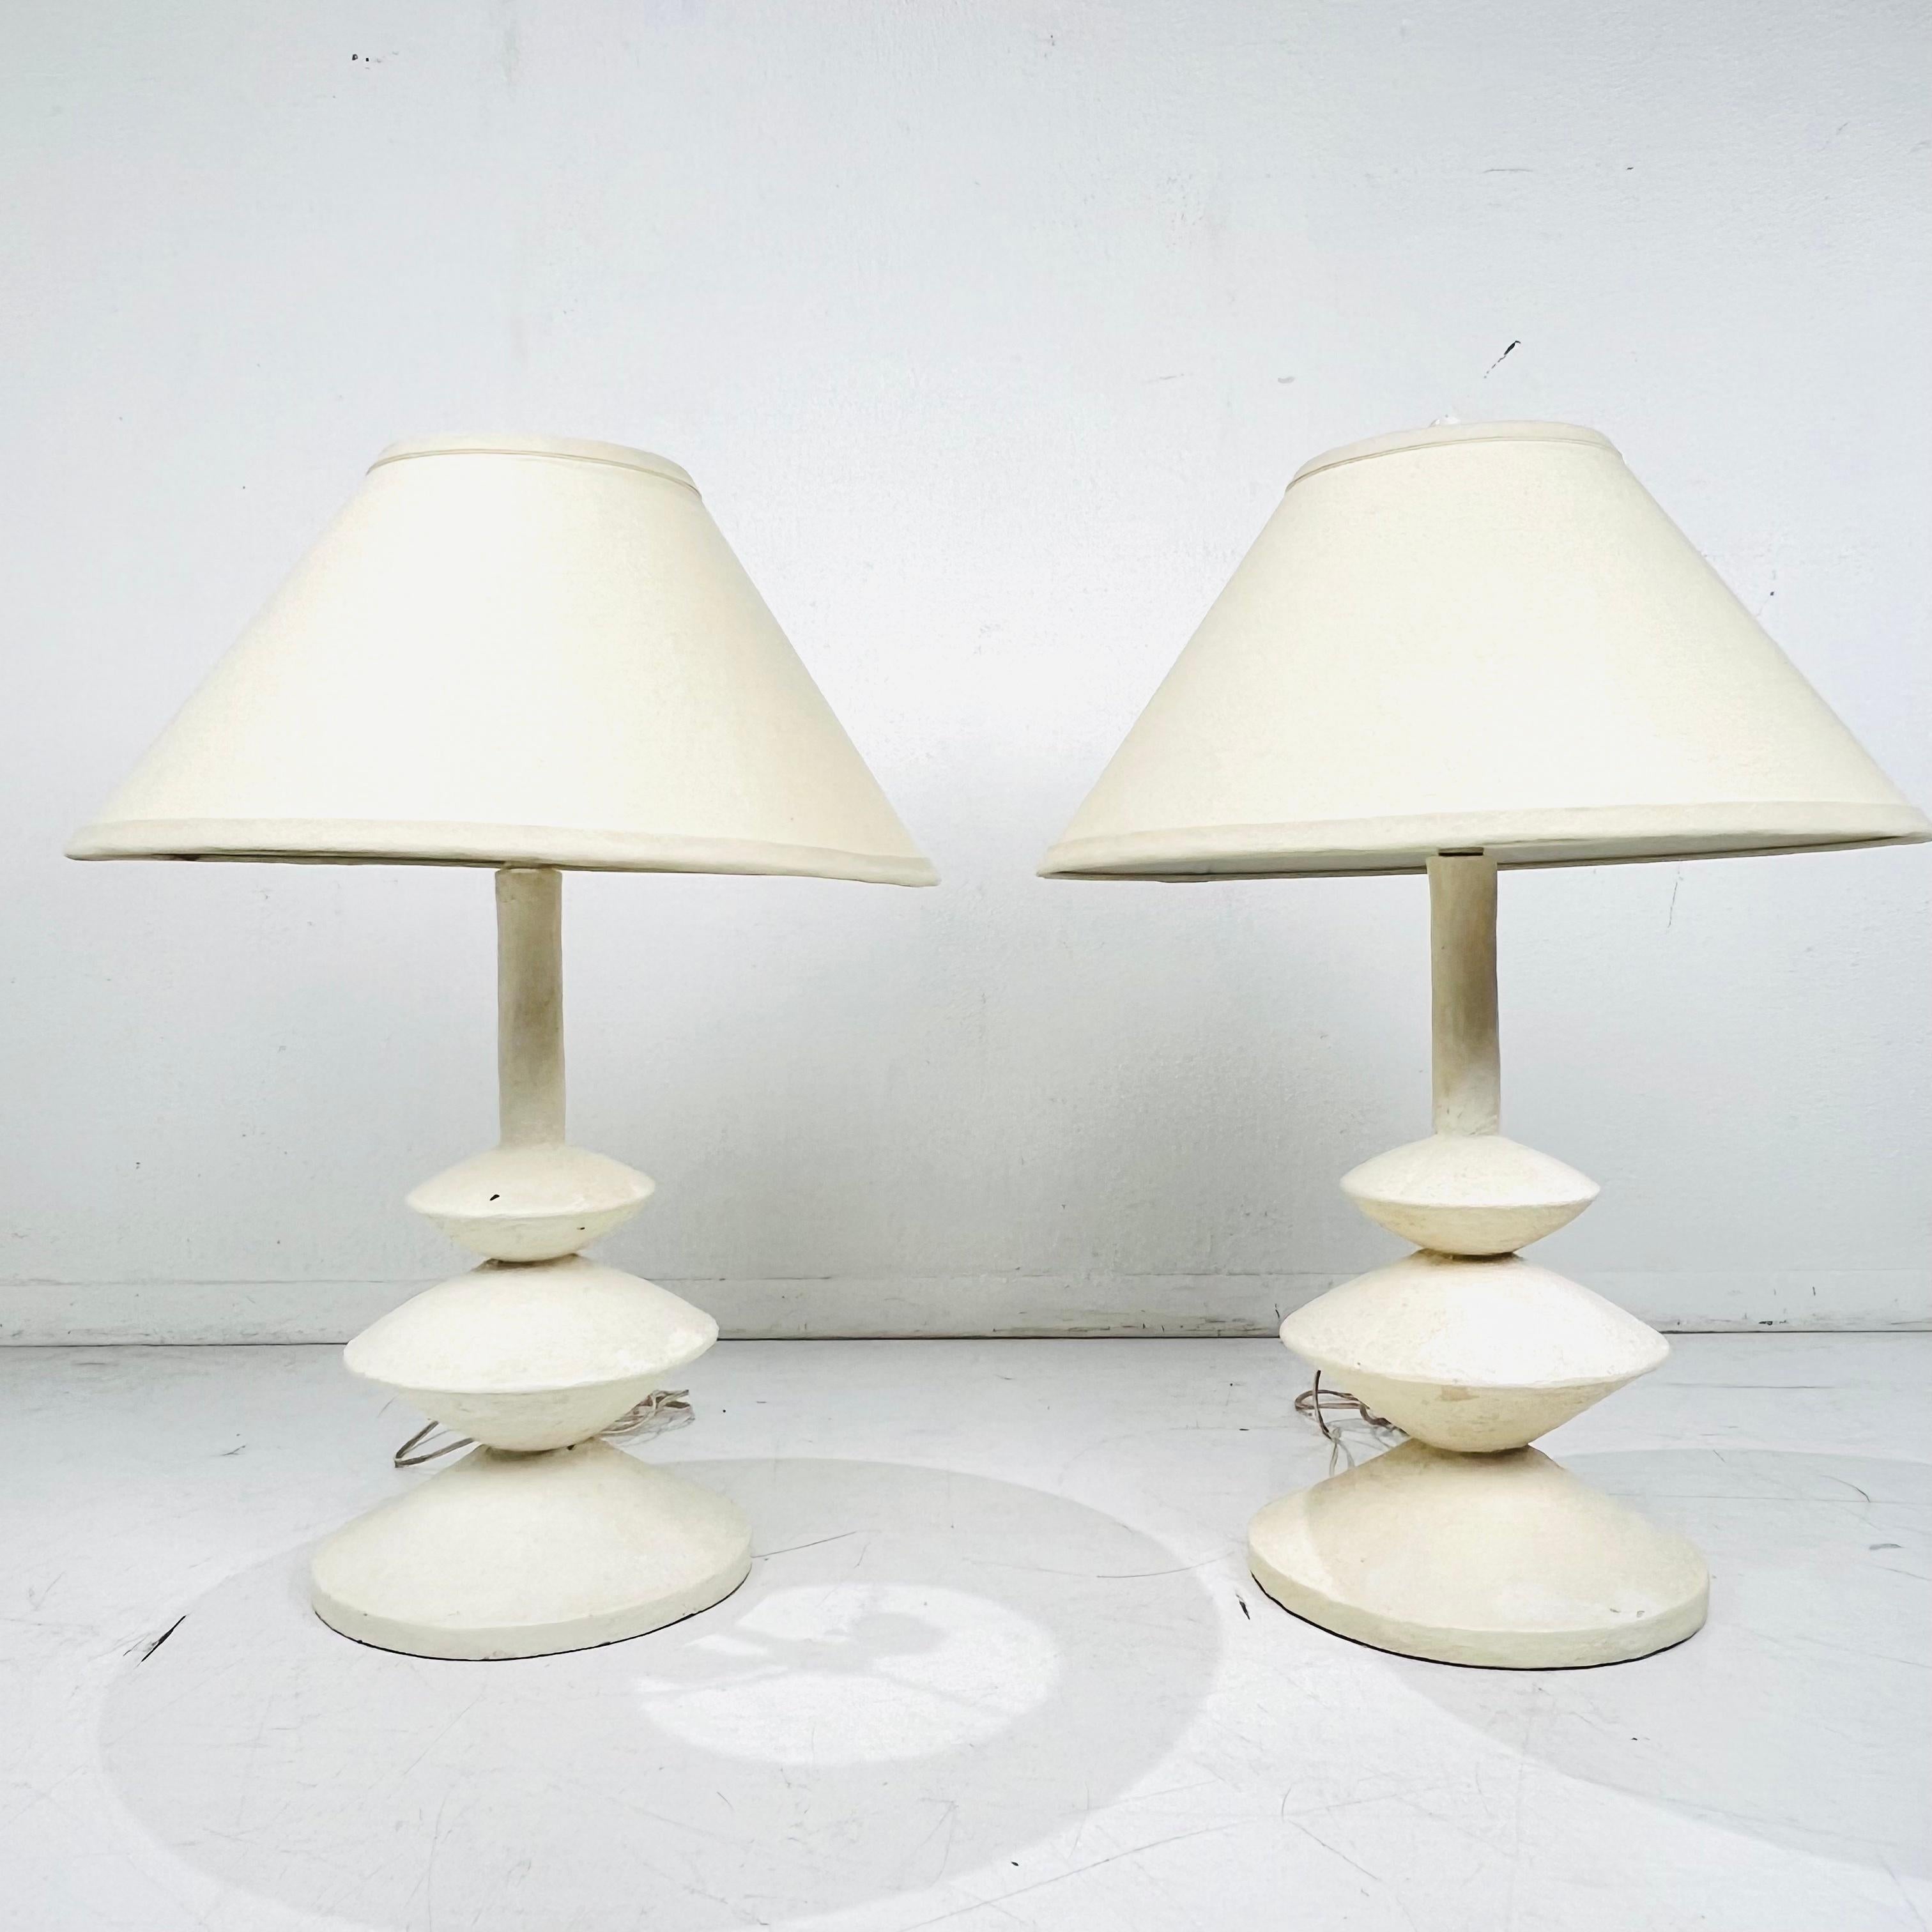 Elegantes Paar Tischlampen im französischen Stil im Stil von Alberto und Diego Giacometti. Diese Lampen haben eine zeitlose säulenförmige, zylindrische, organische Form, die eine bezaubernde Sensibilität hat. Preis und Verkauf als Paar. Die